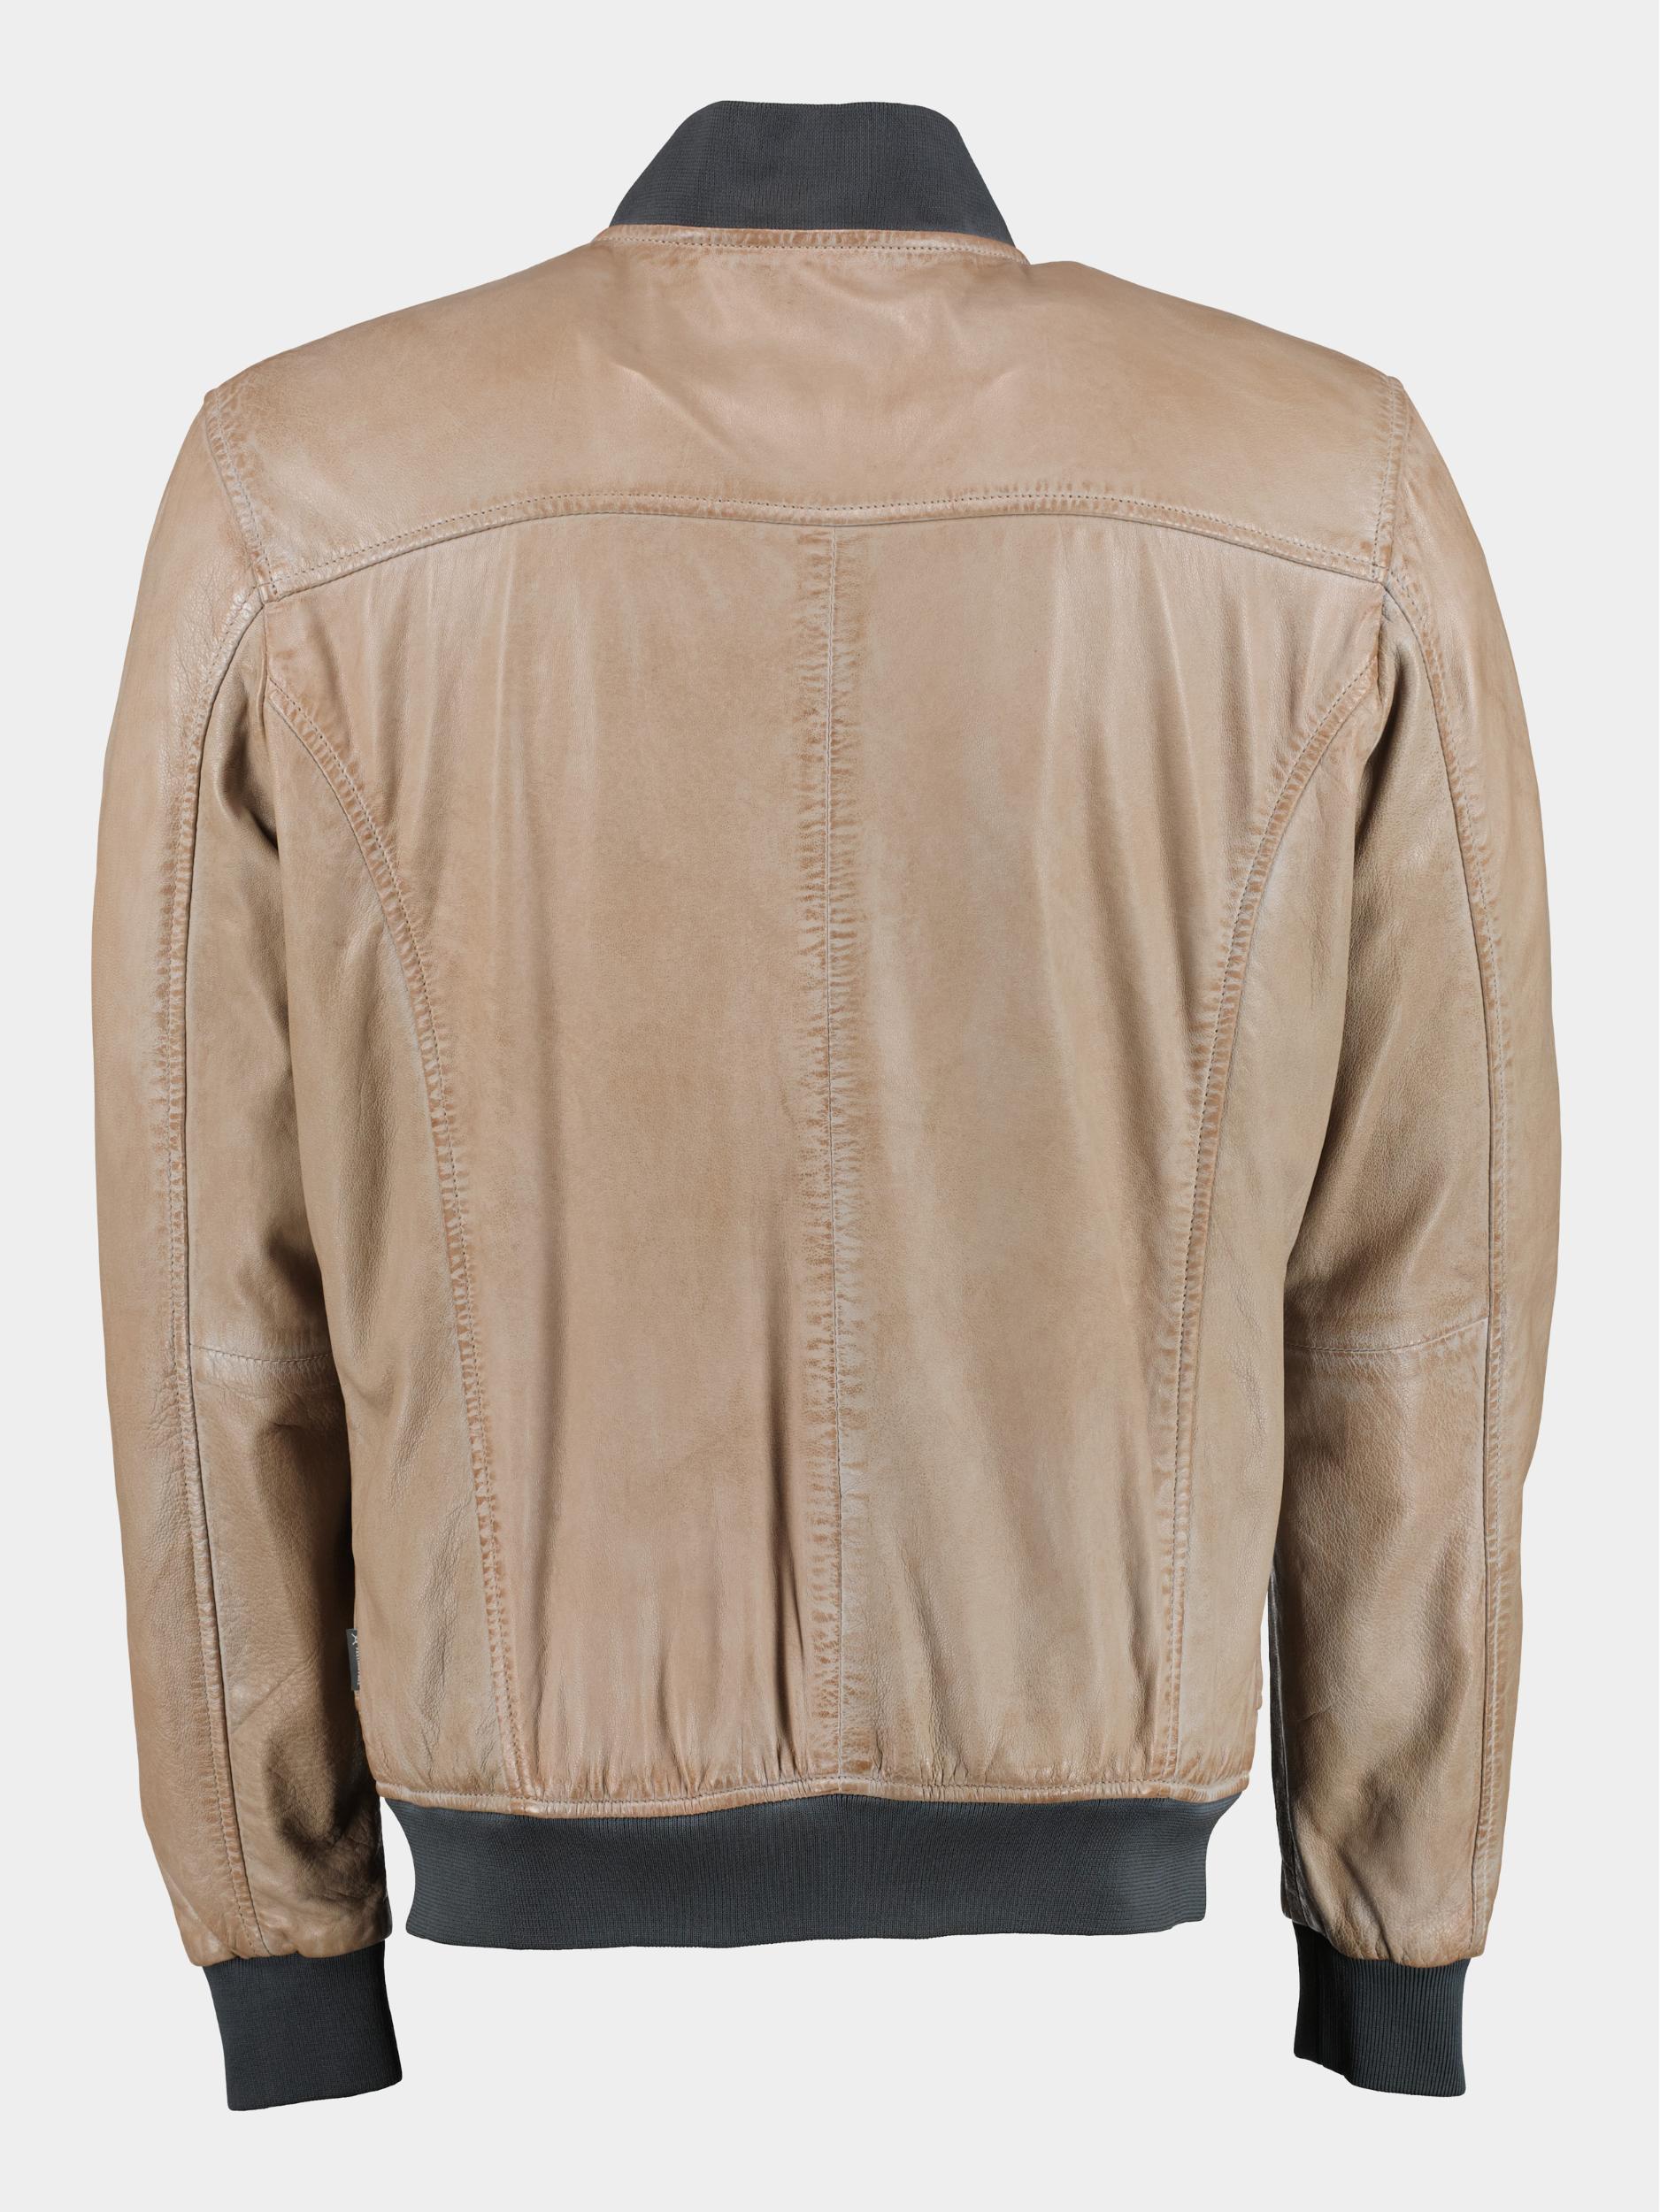 Donders 1860 Lederen jack Beige Leather Jacket 52359/350